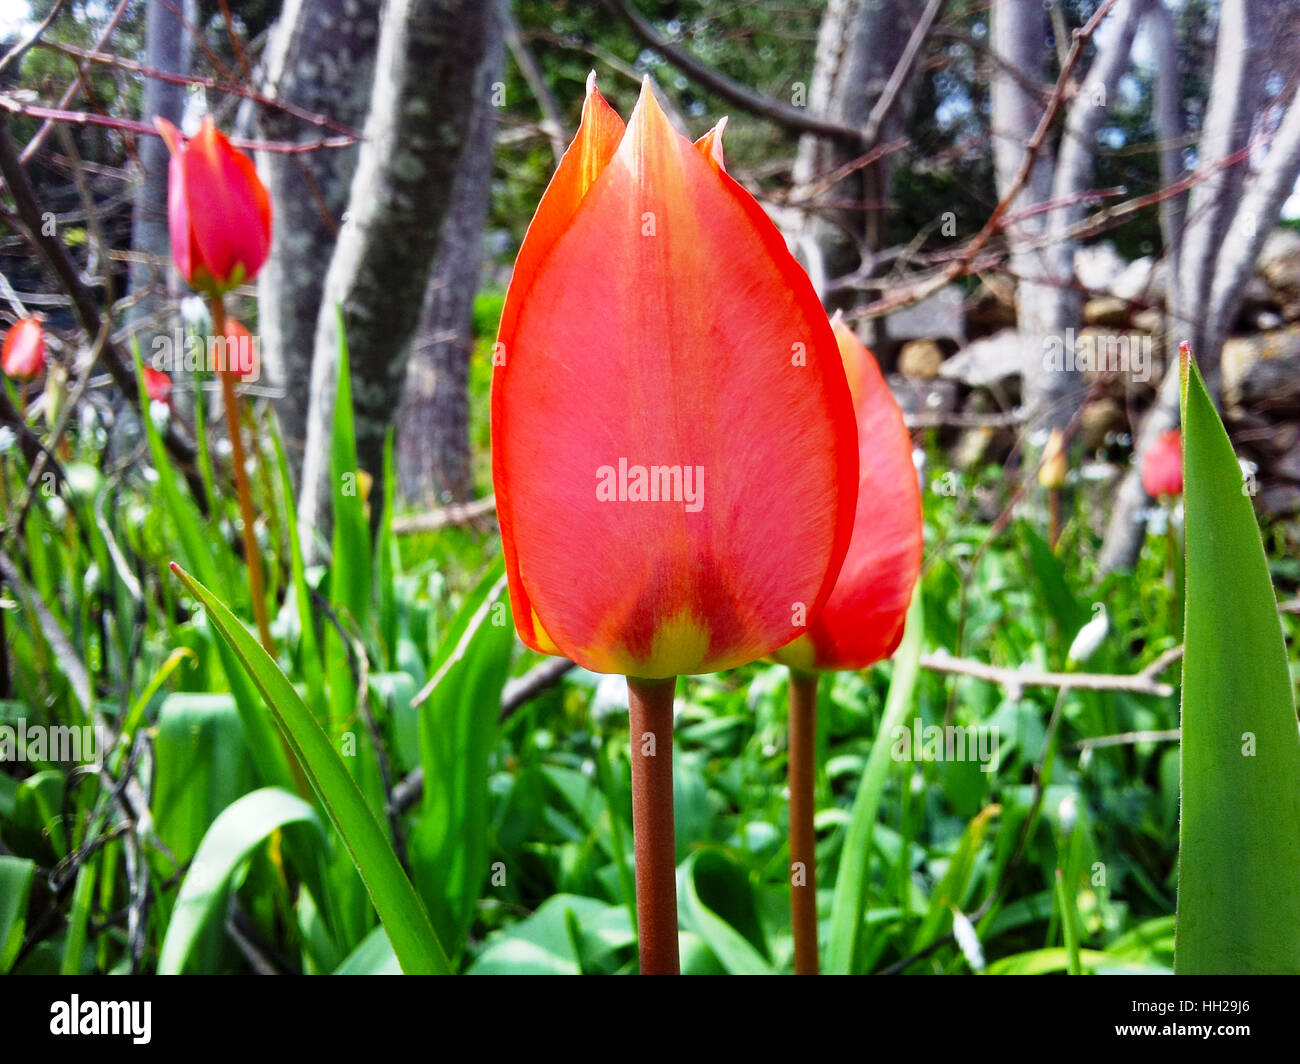 Tulipe rouge de Chios. Une espèce de tulip trouvés dans l'île de Chios, appelé lalades. Elles fleurissent au début du printemps. Banque D'Images